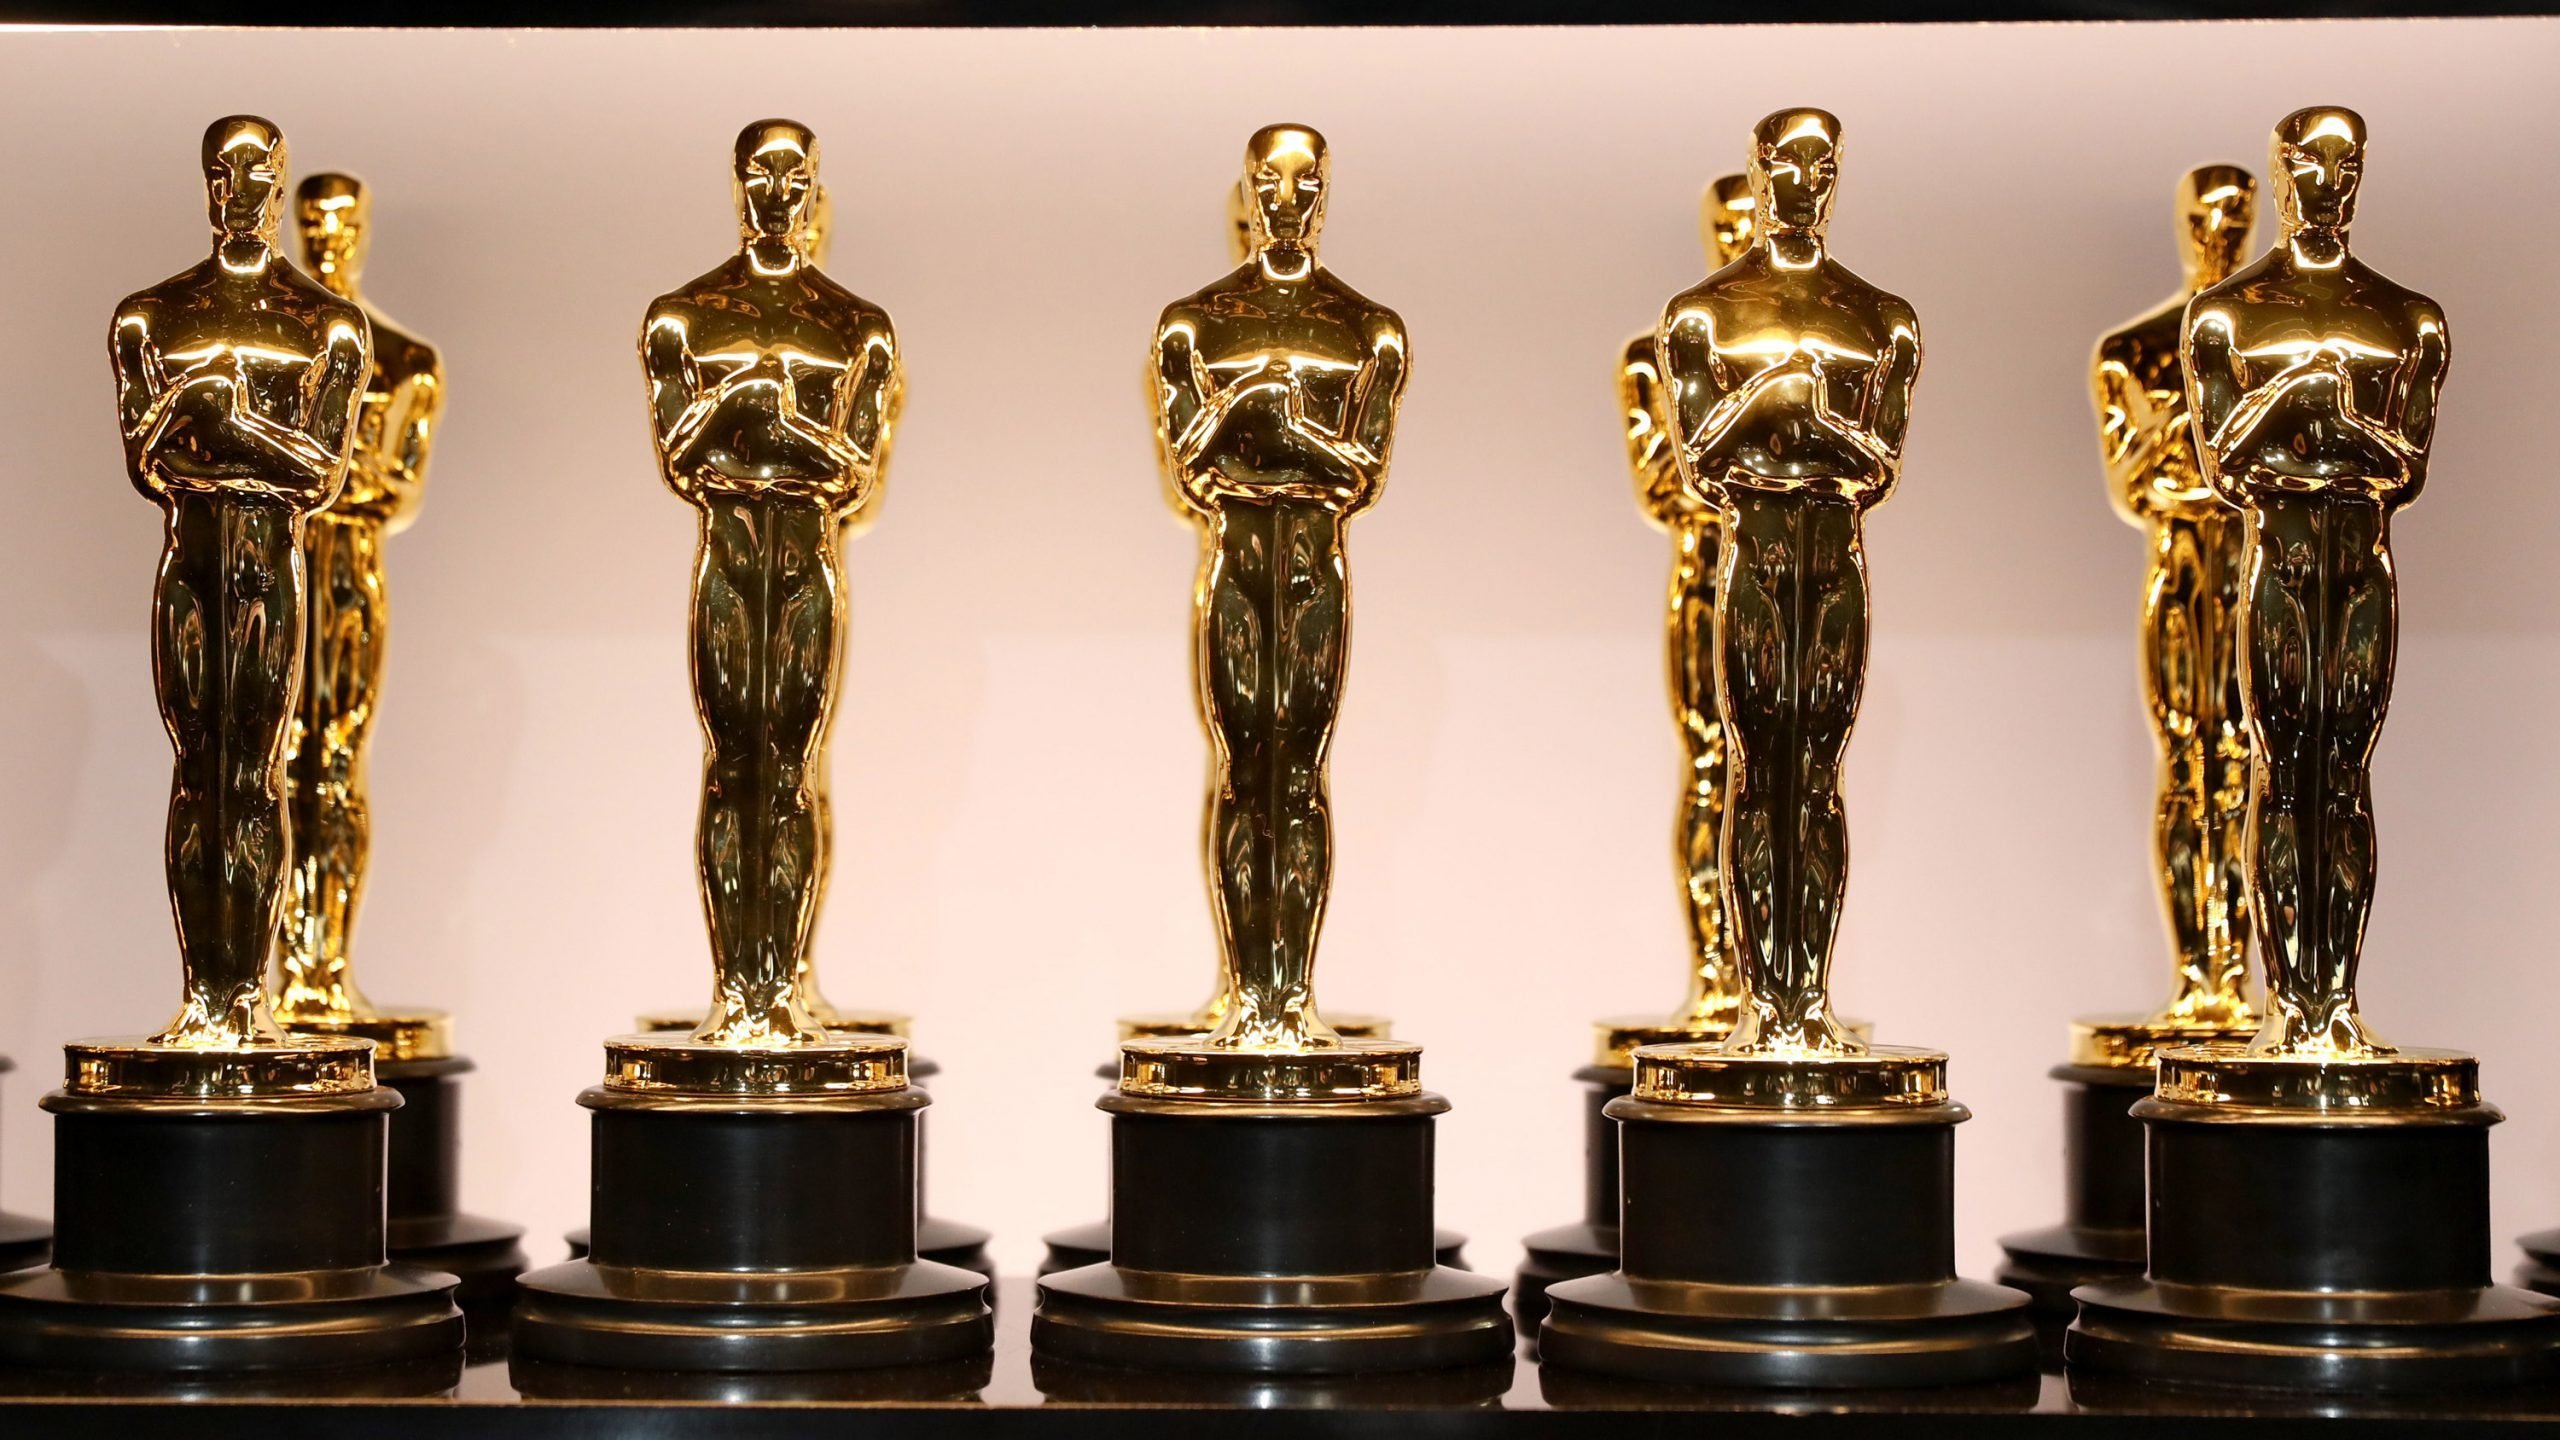 Daftar Lengkap Nominasi Piala Oscar 2023 | Dari Kategori Film, Aktor, hingga Sutradara Terbaik